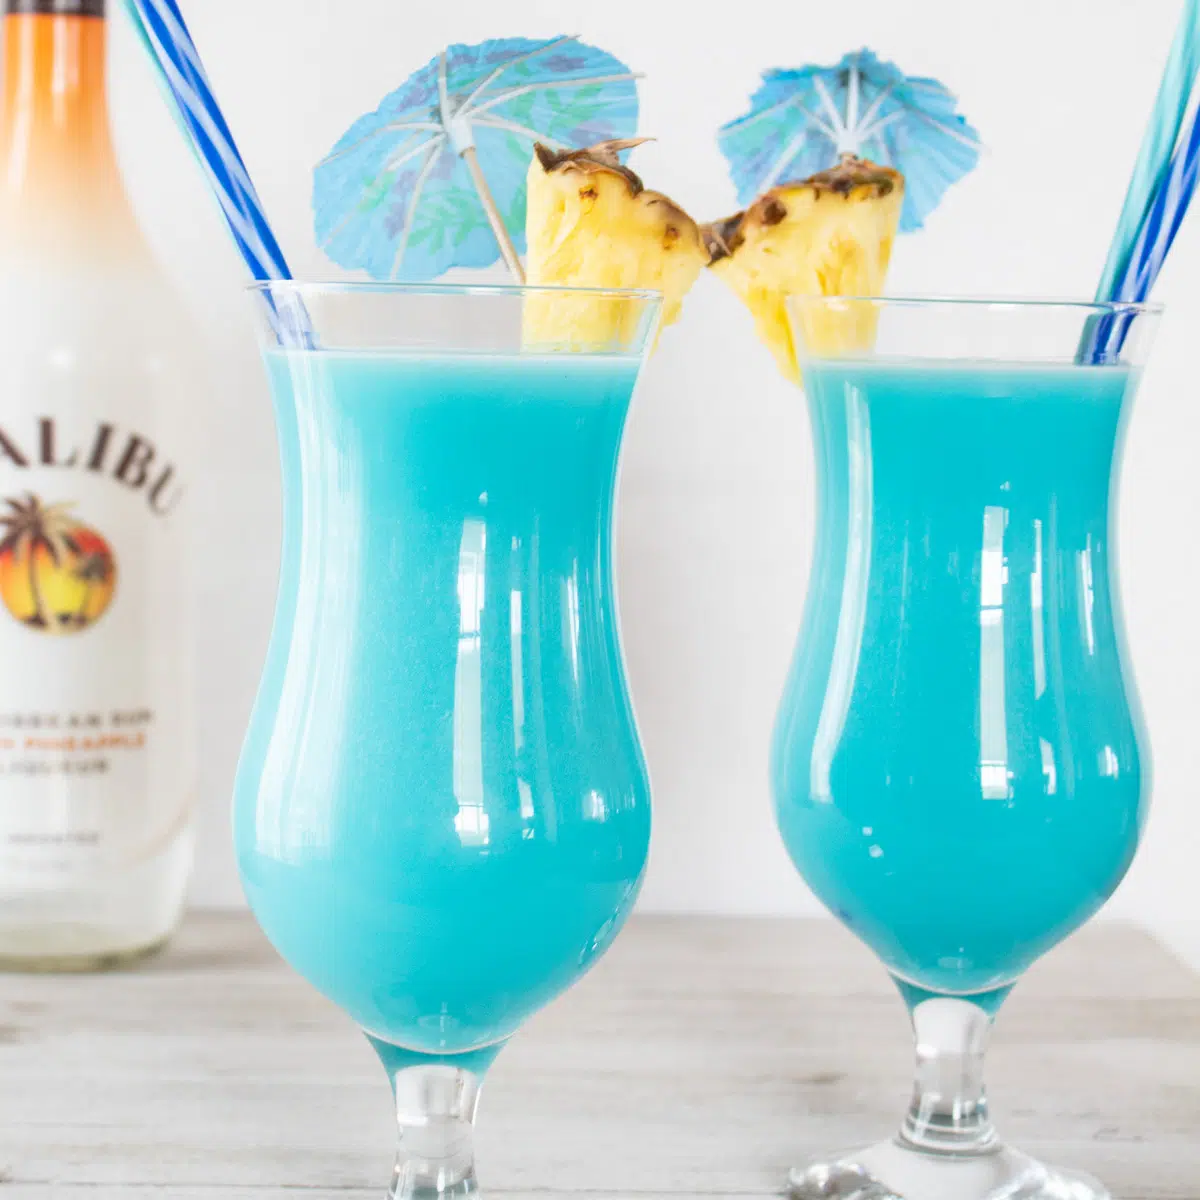 Bevroren blauwe hawaiiaanse cocktail geserveerd in orkaanglazen met ananasgarnituur.